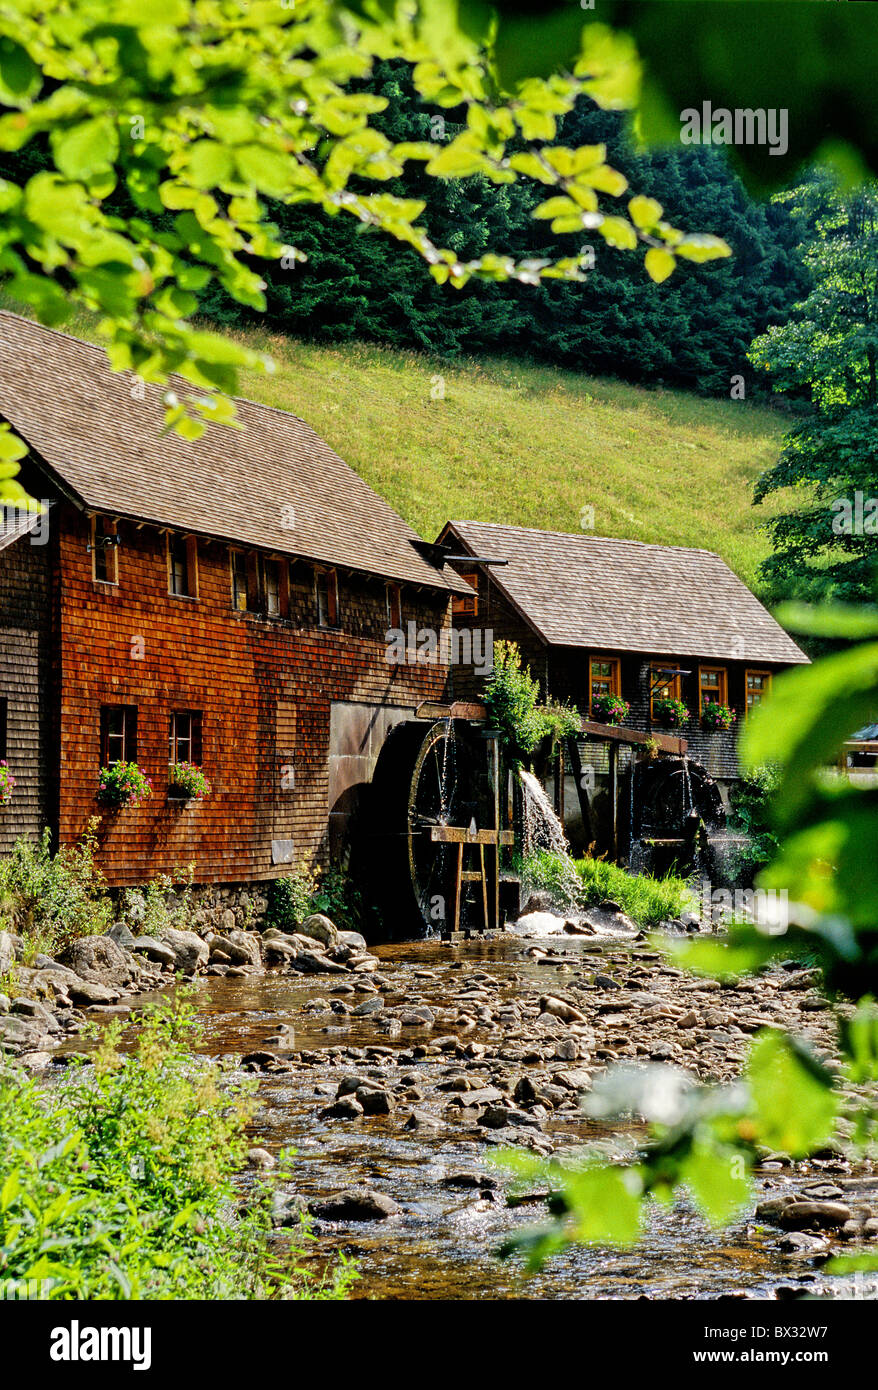 Vieux moulin à bardeaux historique river mill trou sorcière Gutenbach Forêt Noire Allemagne Europe Bade-wurtemberg Banque D'Images